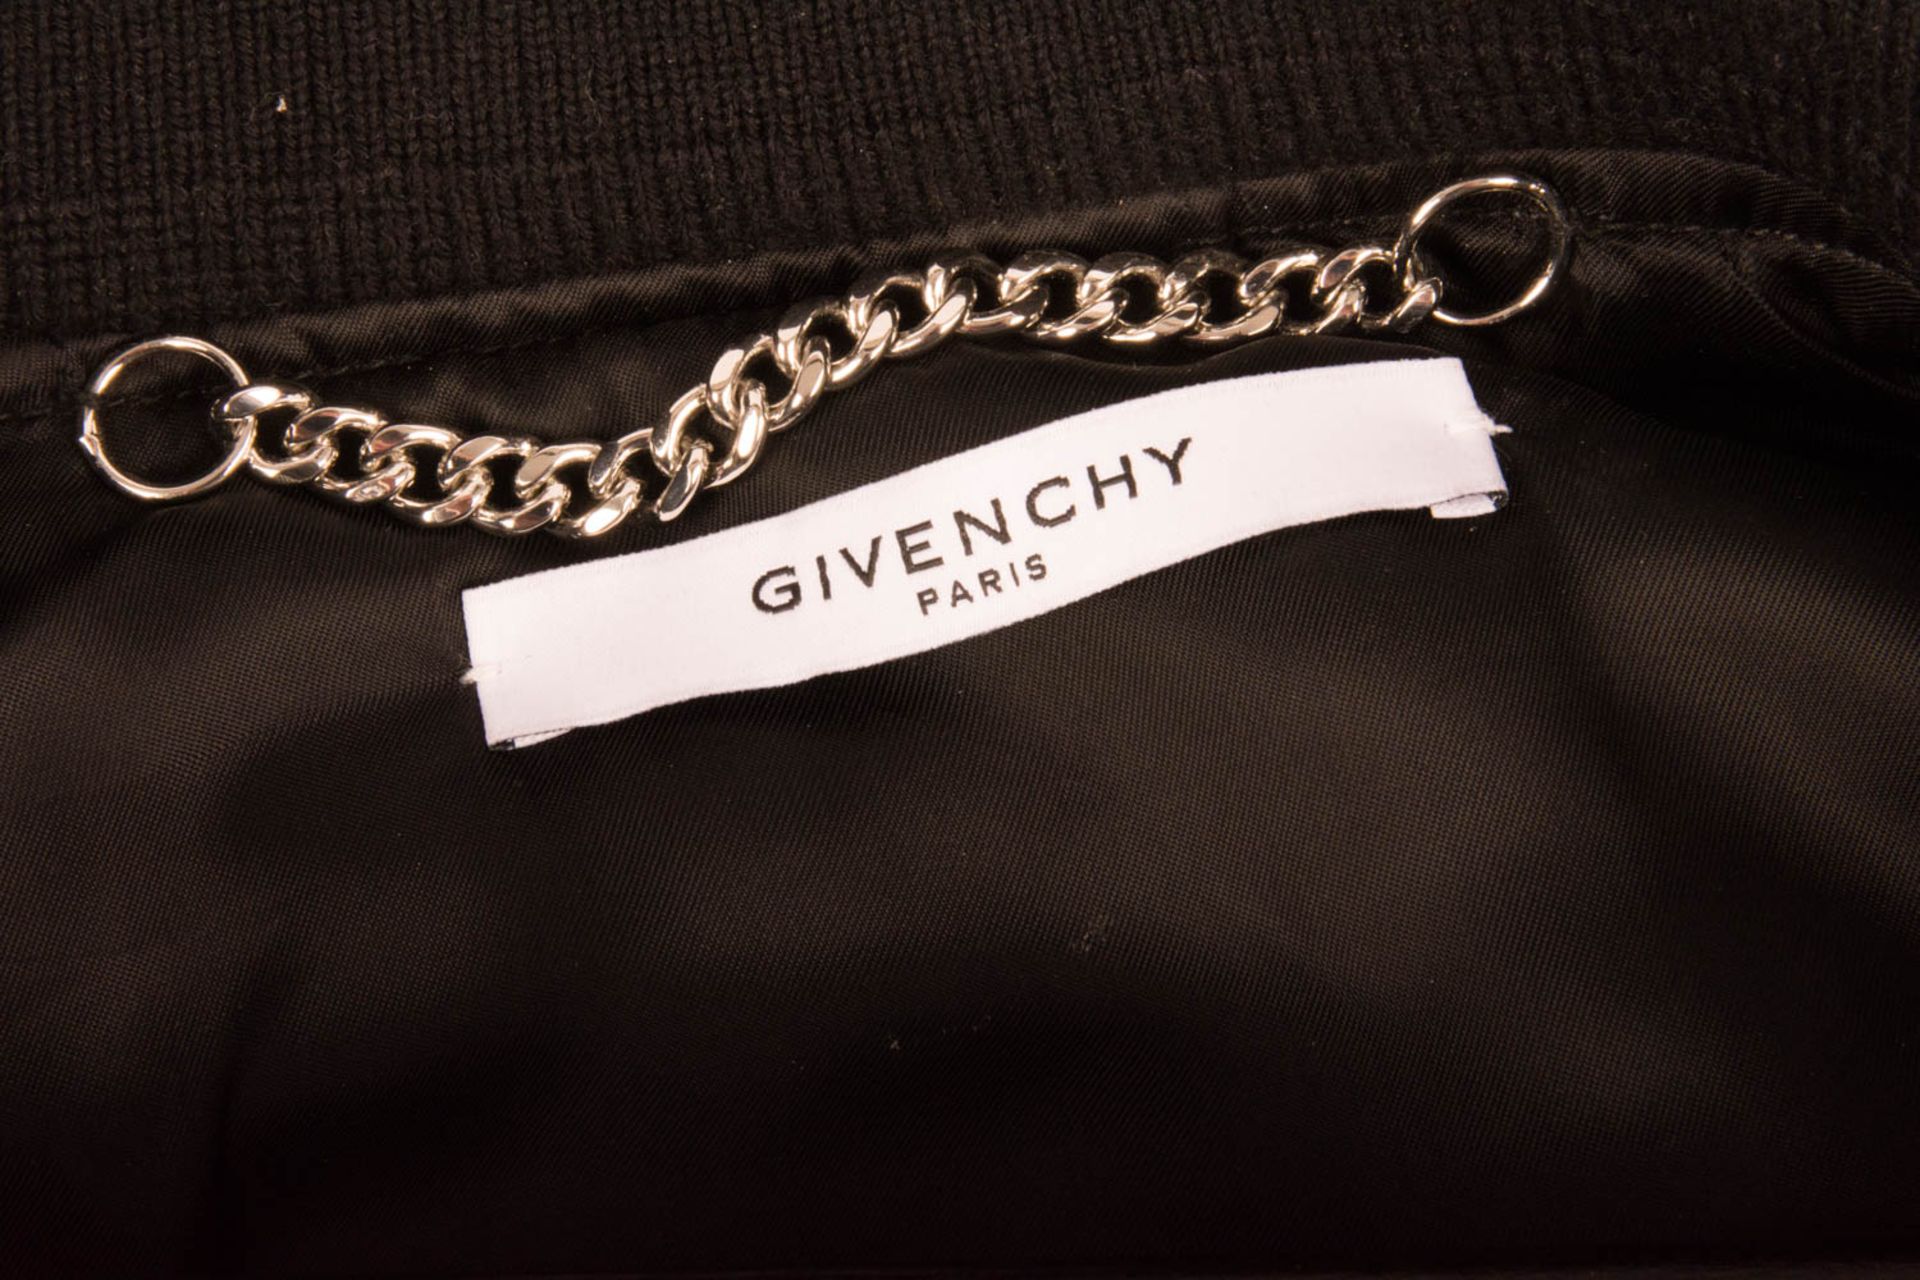 Givenchy Paris, Motiv-Bomberjacke für Herren. - Bild 4 aus 4